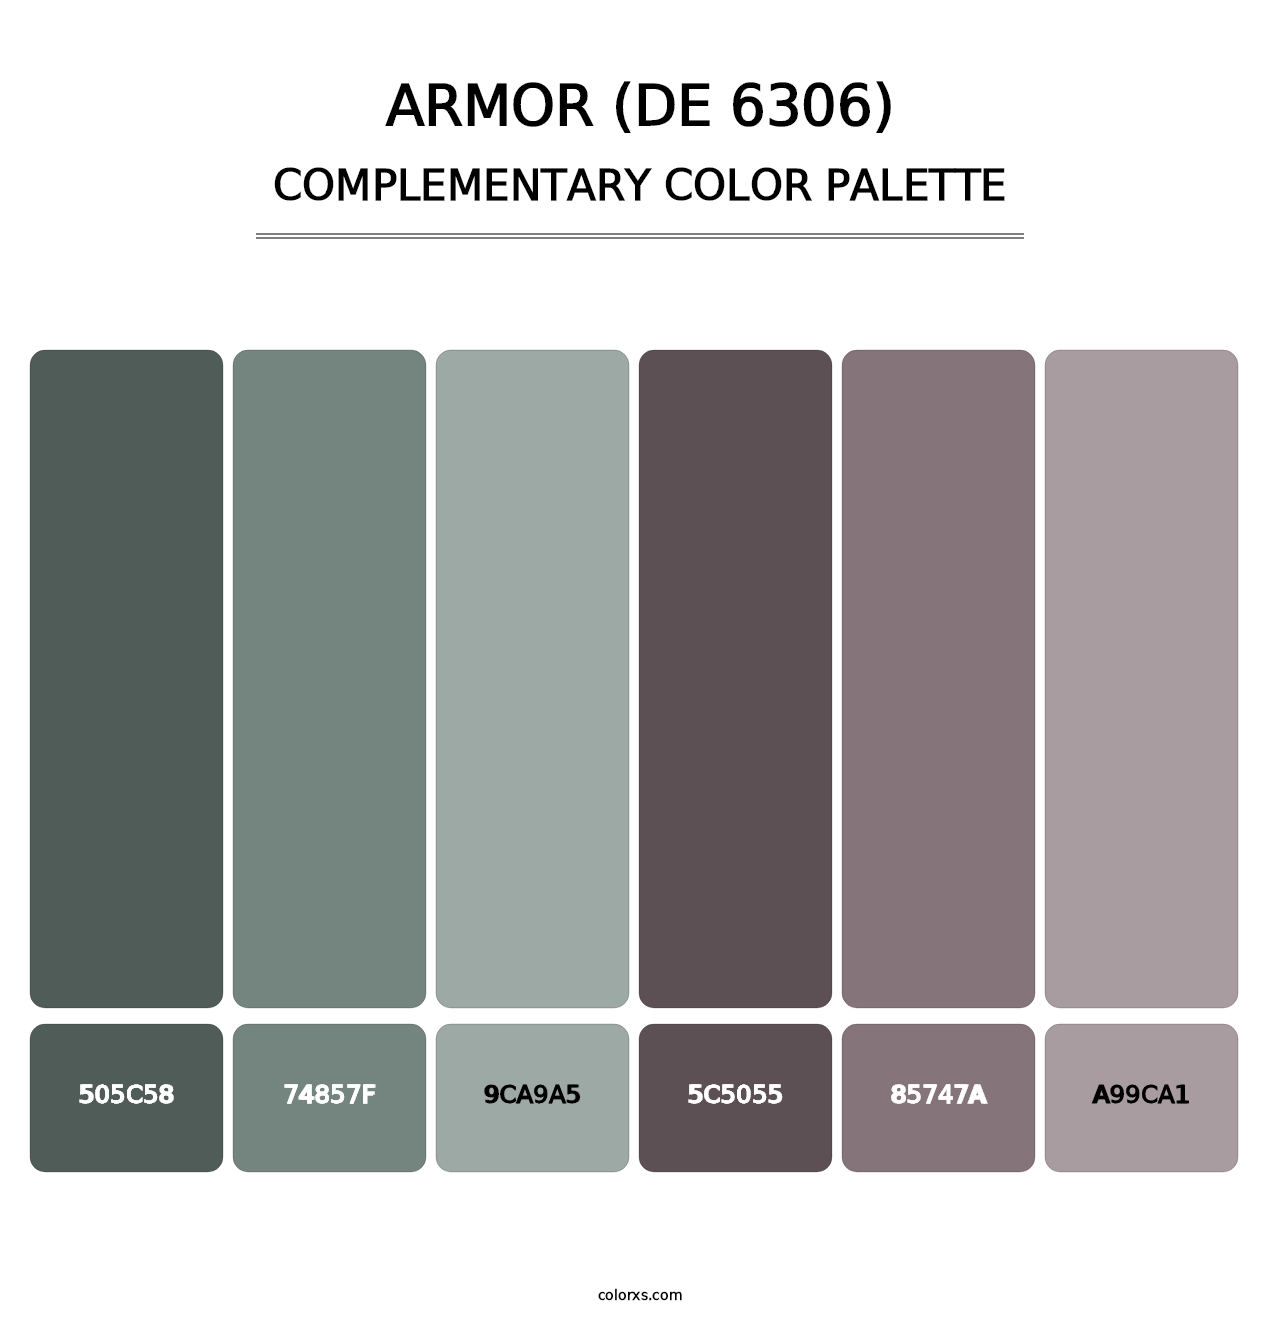 Armor (DE 6306) - Complementary Color Palette